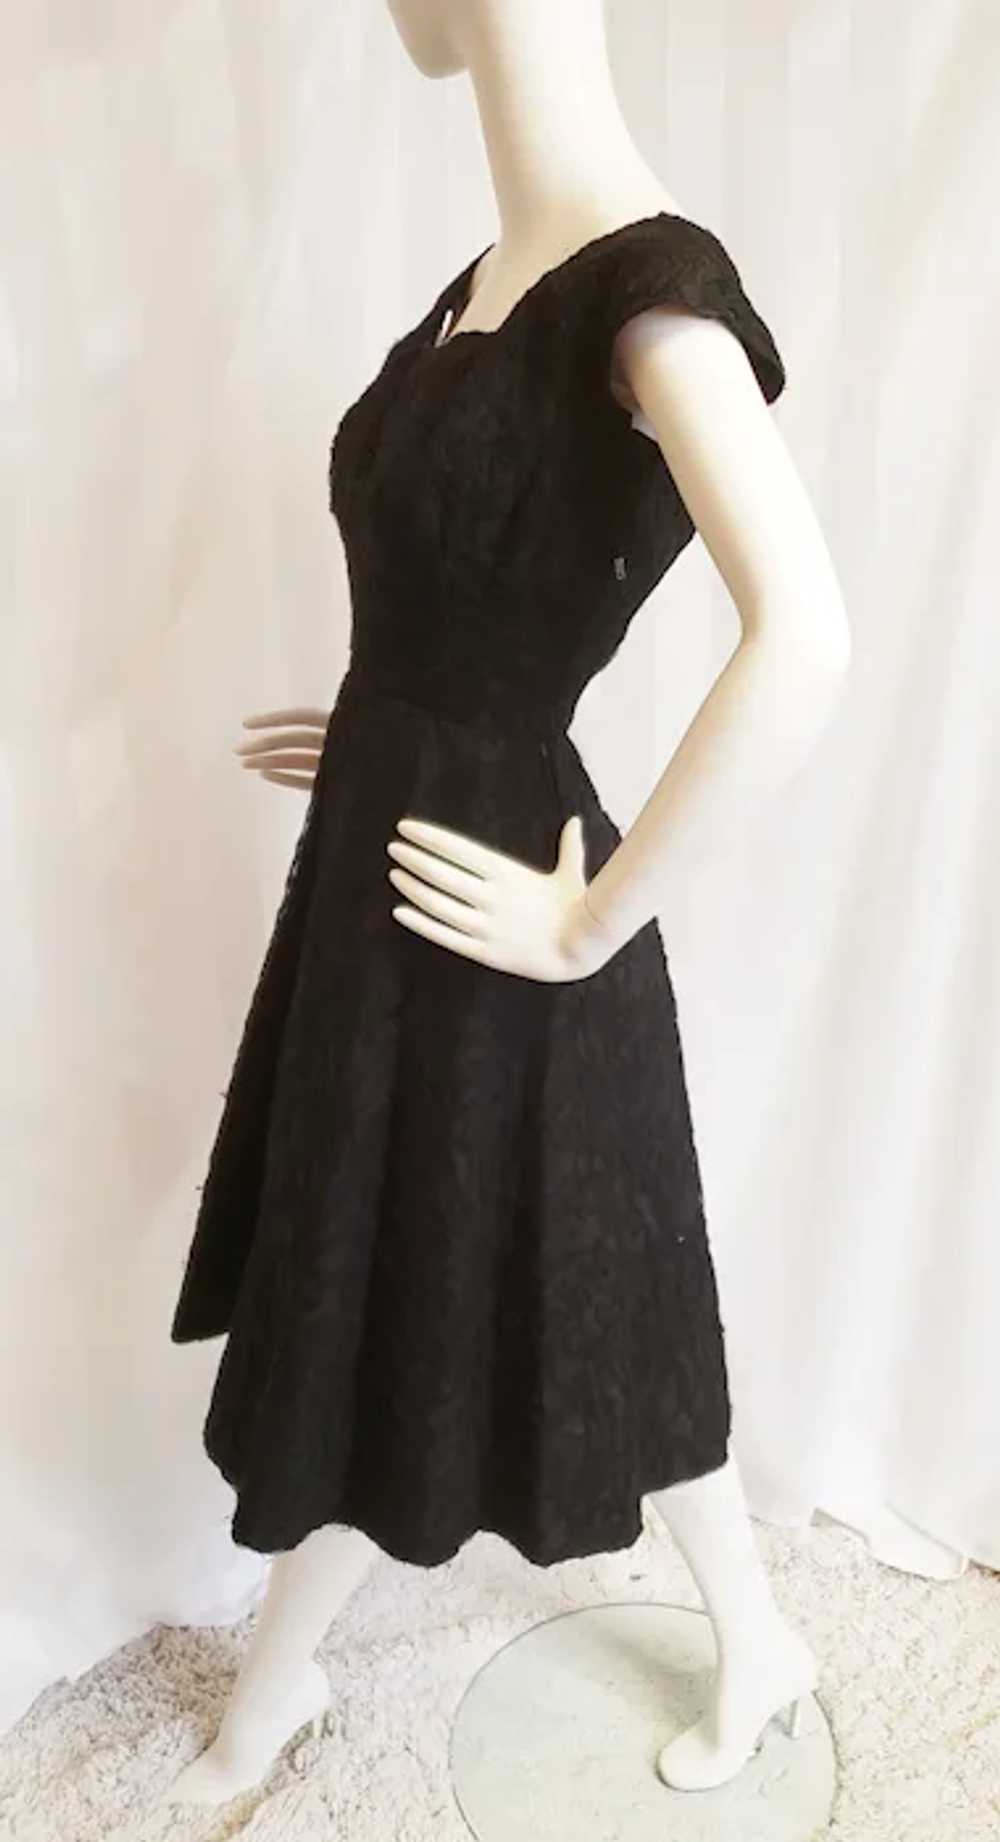 Hattie Carnegie 1950's Black Lace Cocktail Dress - image 5